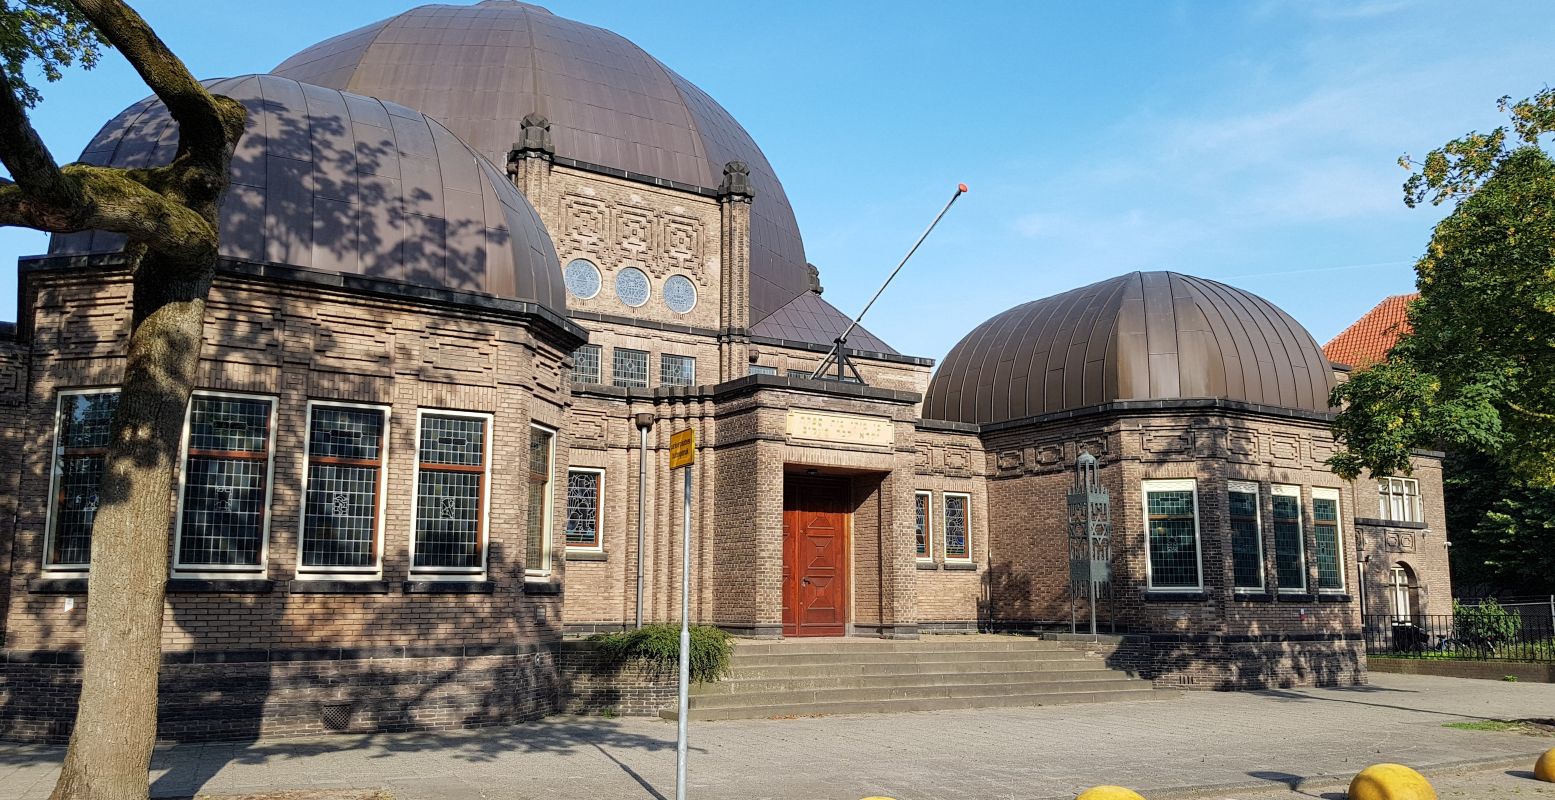 De Synagoge van Enschede wordt beschouwd als een van de mooiste synagoges van Nederland. Kom zelf kijken waarom. Foto: DagjeWeg.NL © Tonny van Oosten